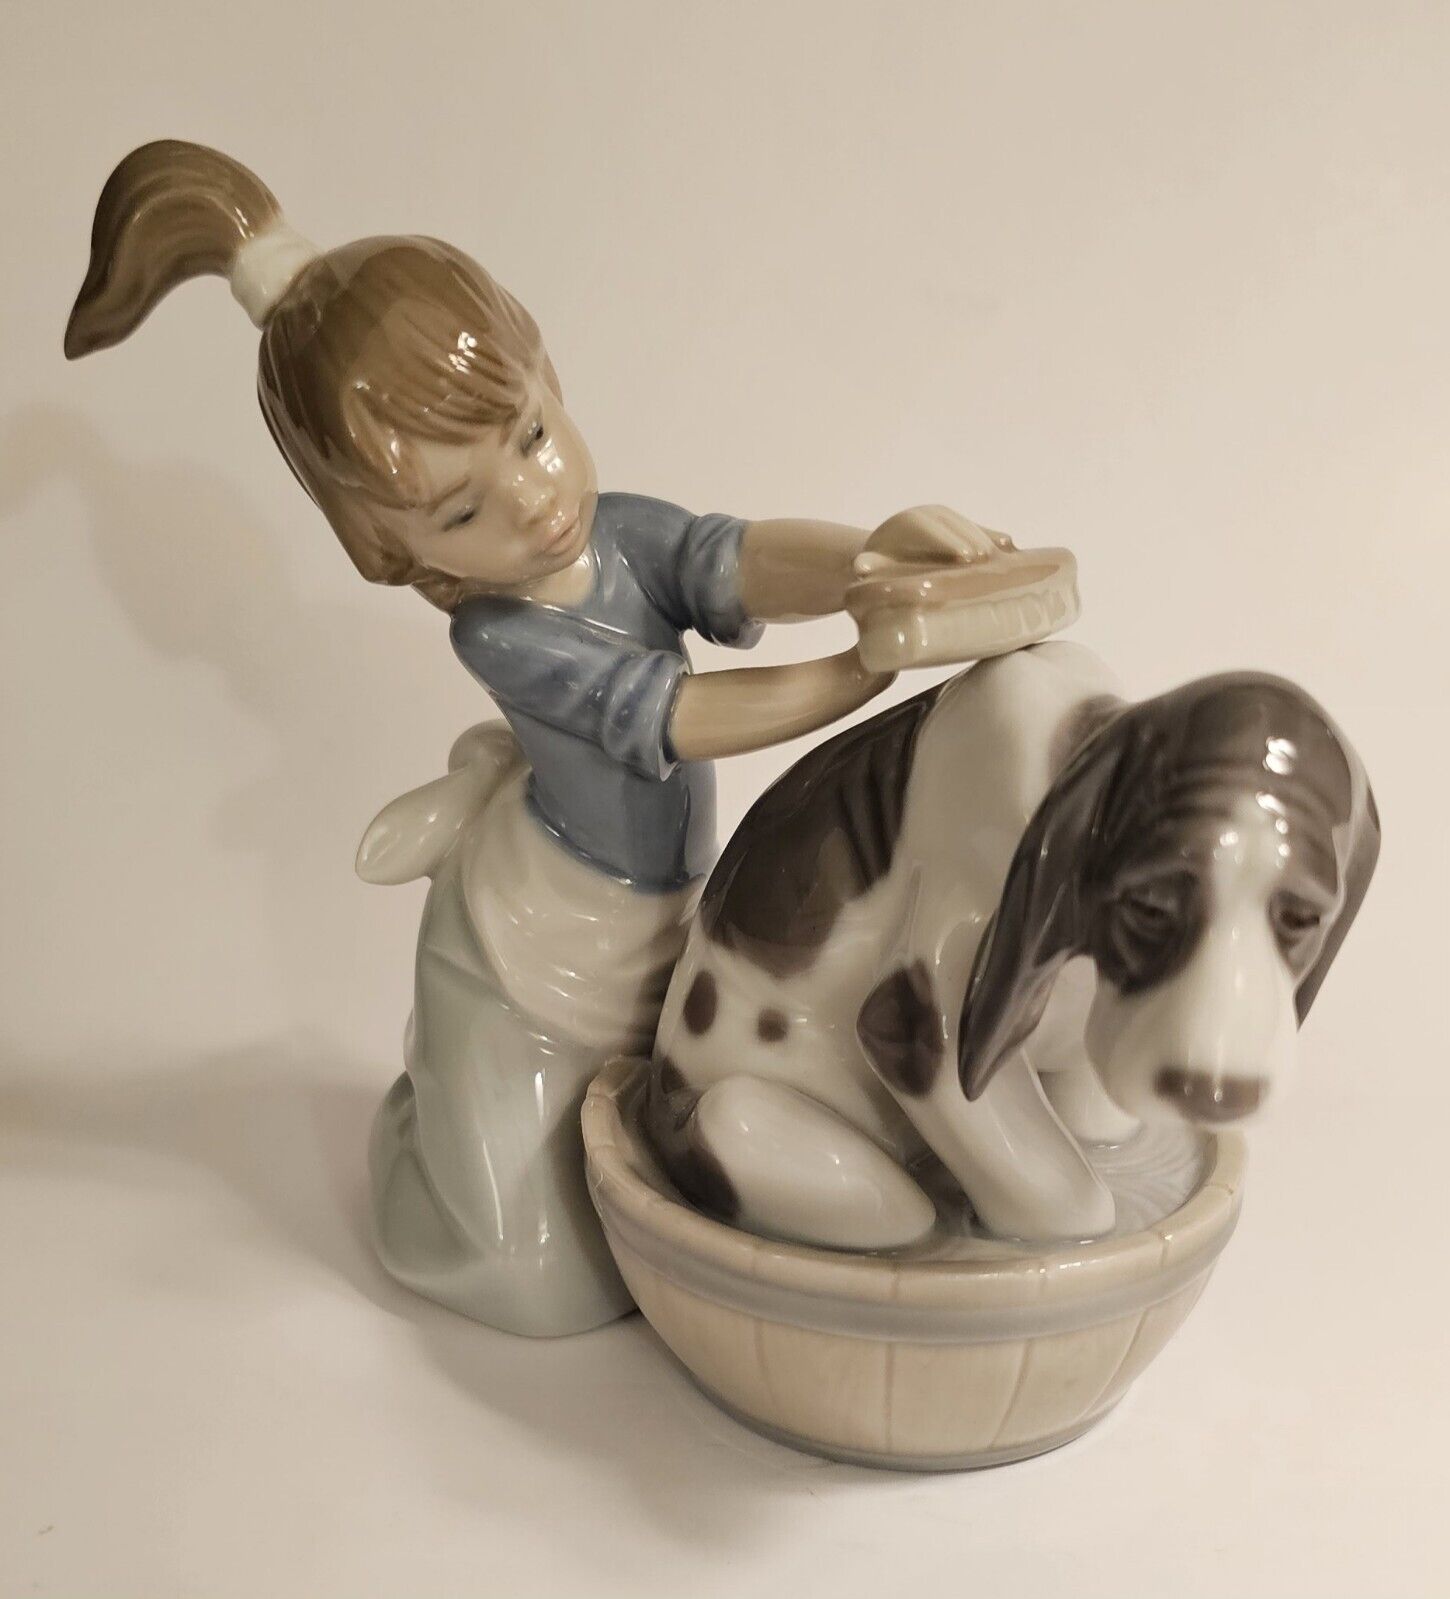 Lladro Figurine BASHFUL BATHER GIRL WASHING DOG #5455 Made in Spain DAISA 1987